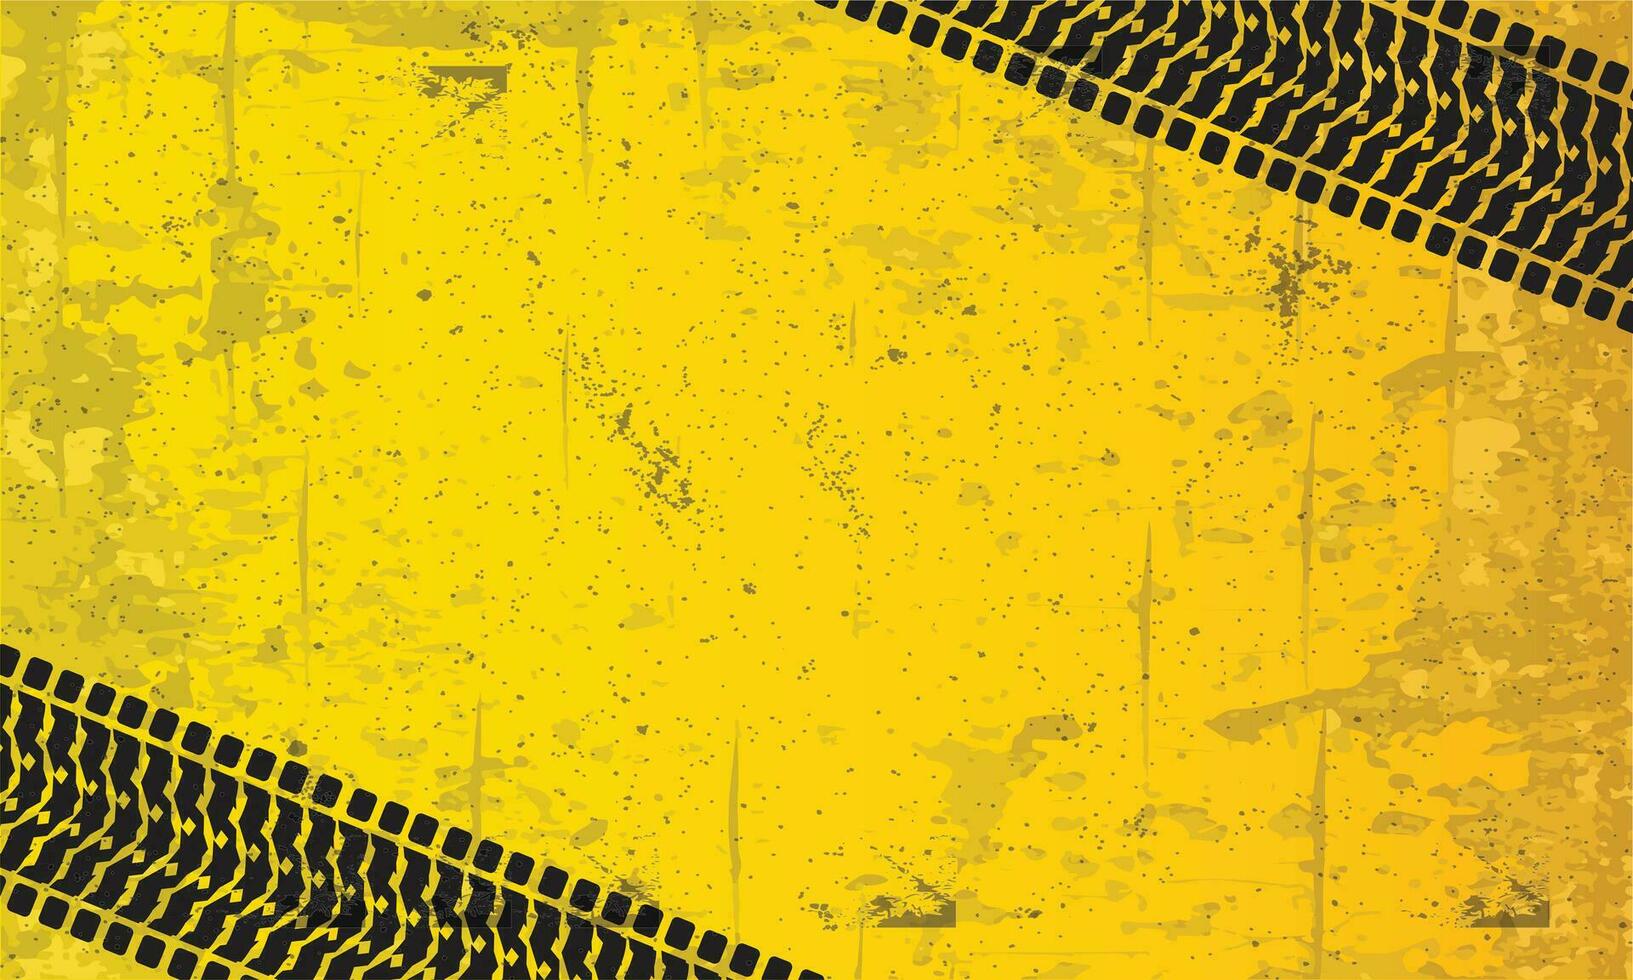 Gelb Grunge mit Reifen Spur Silhouette Hintergrund vektor